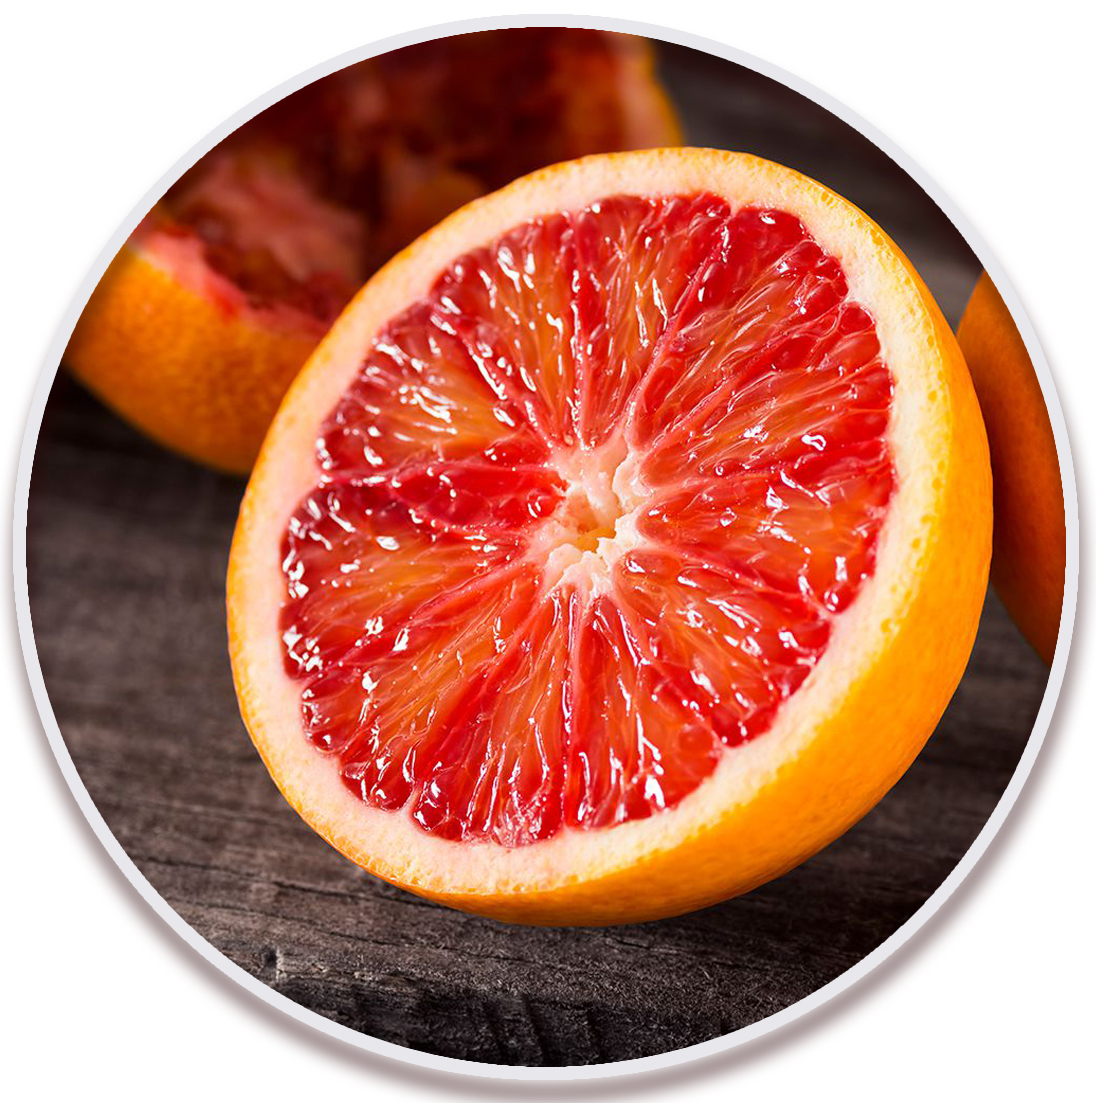 پرتقال خونی مورو (Moro Navel Orange)